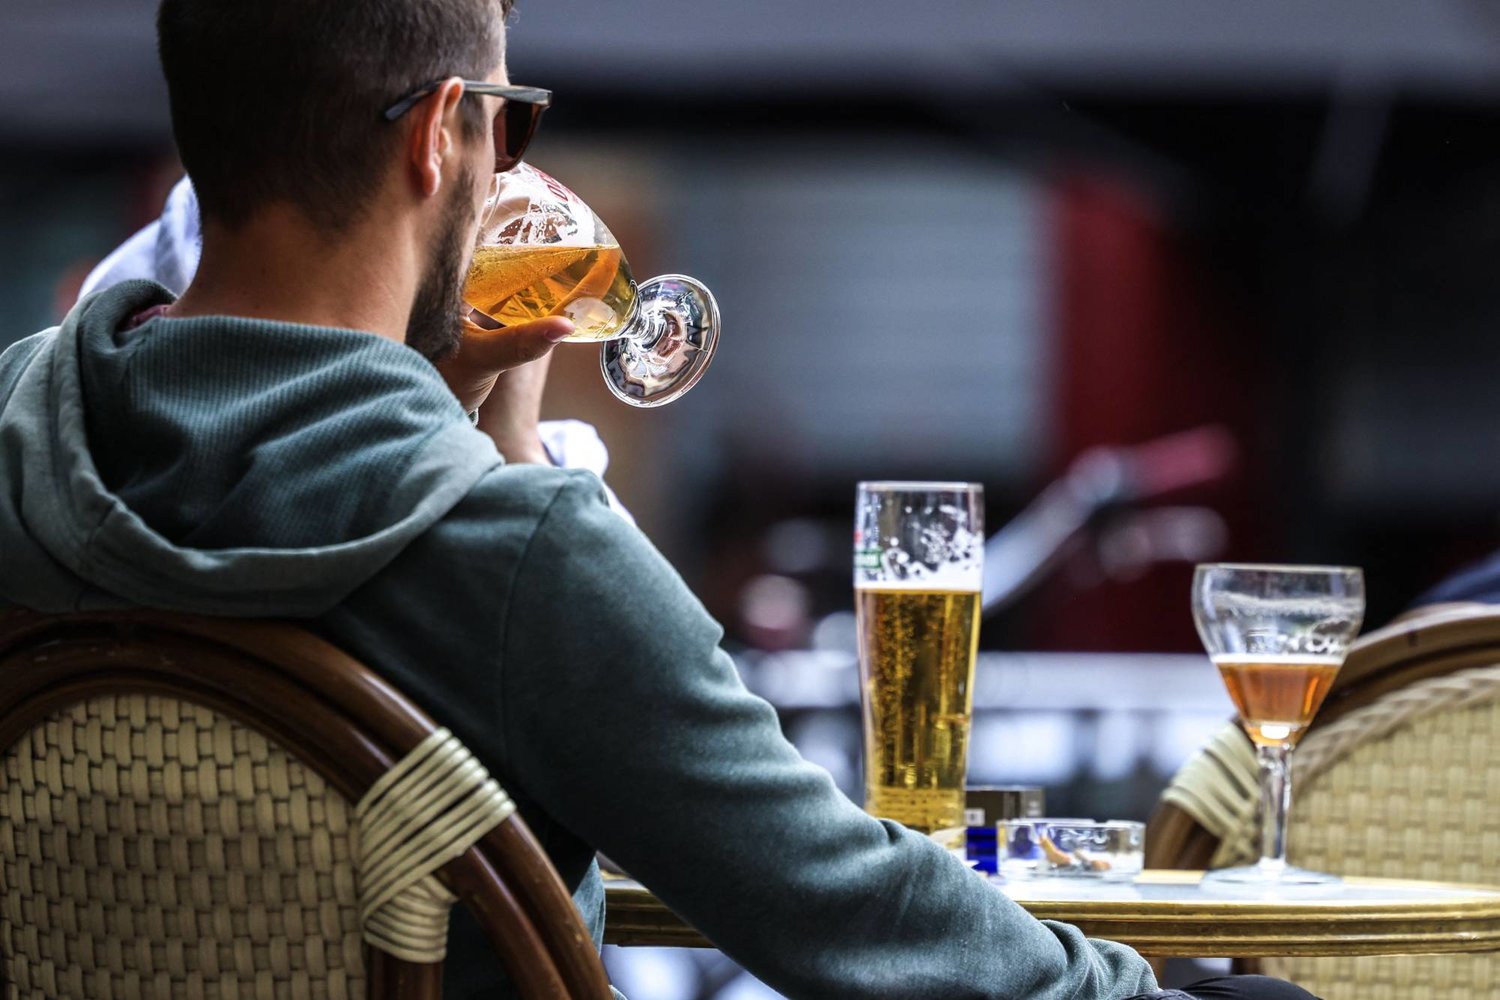 شرب الكحول حتى باعتدال يرتبط بتداعيات صحية (أ.ف.ب)